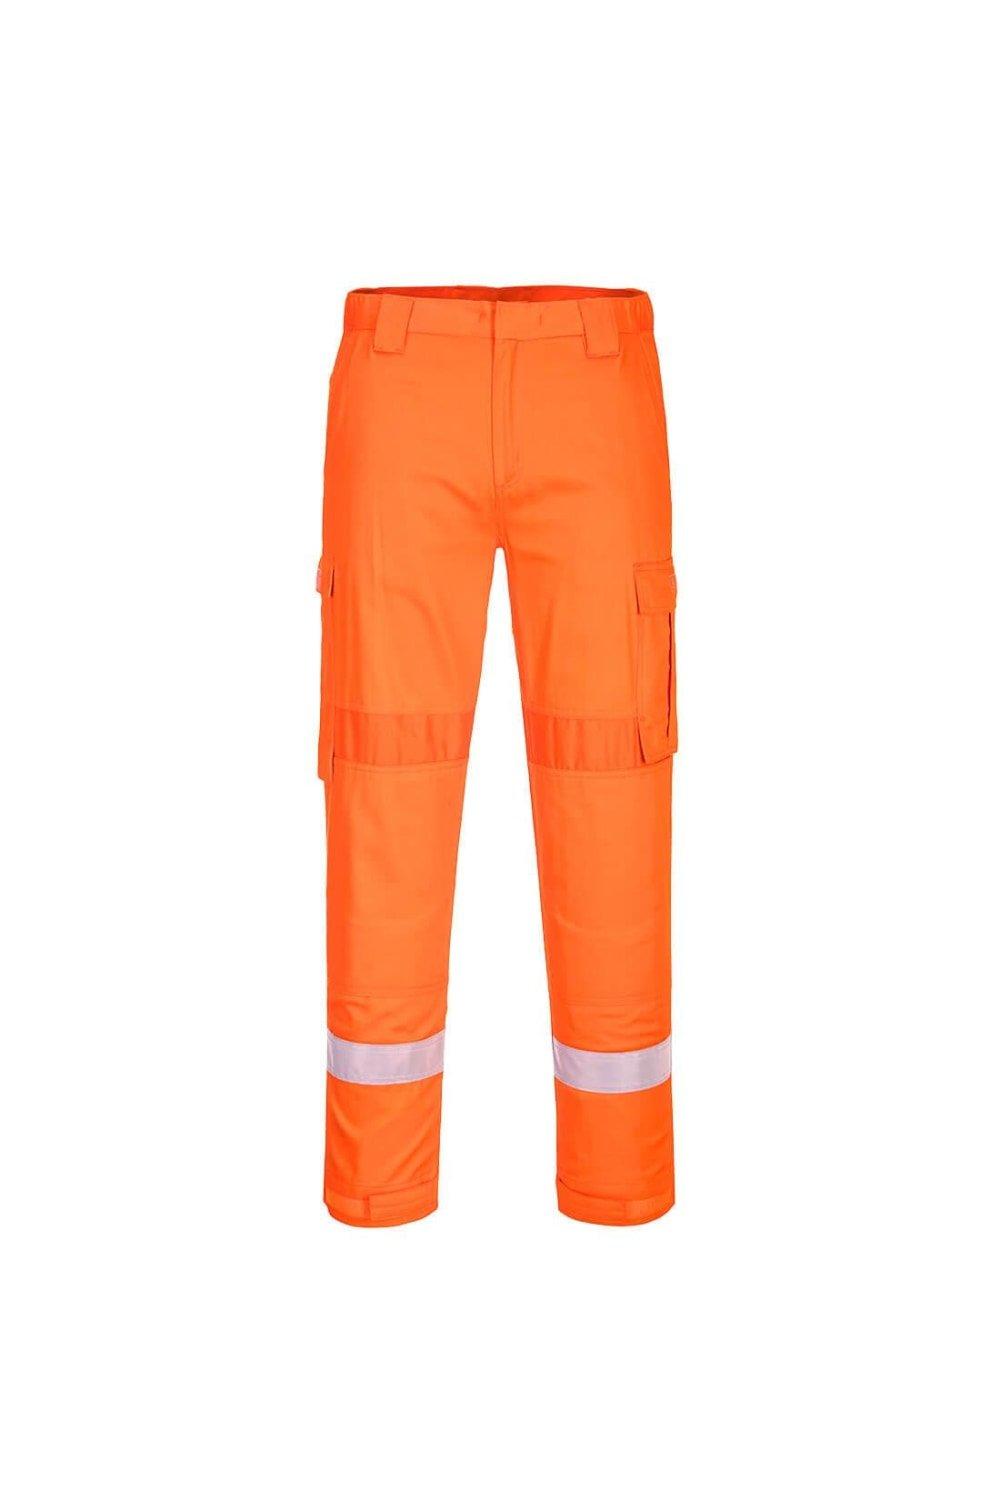 Рабочие брюки со вставками Bizflame Plus Portwest, оранжевый